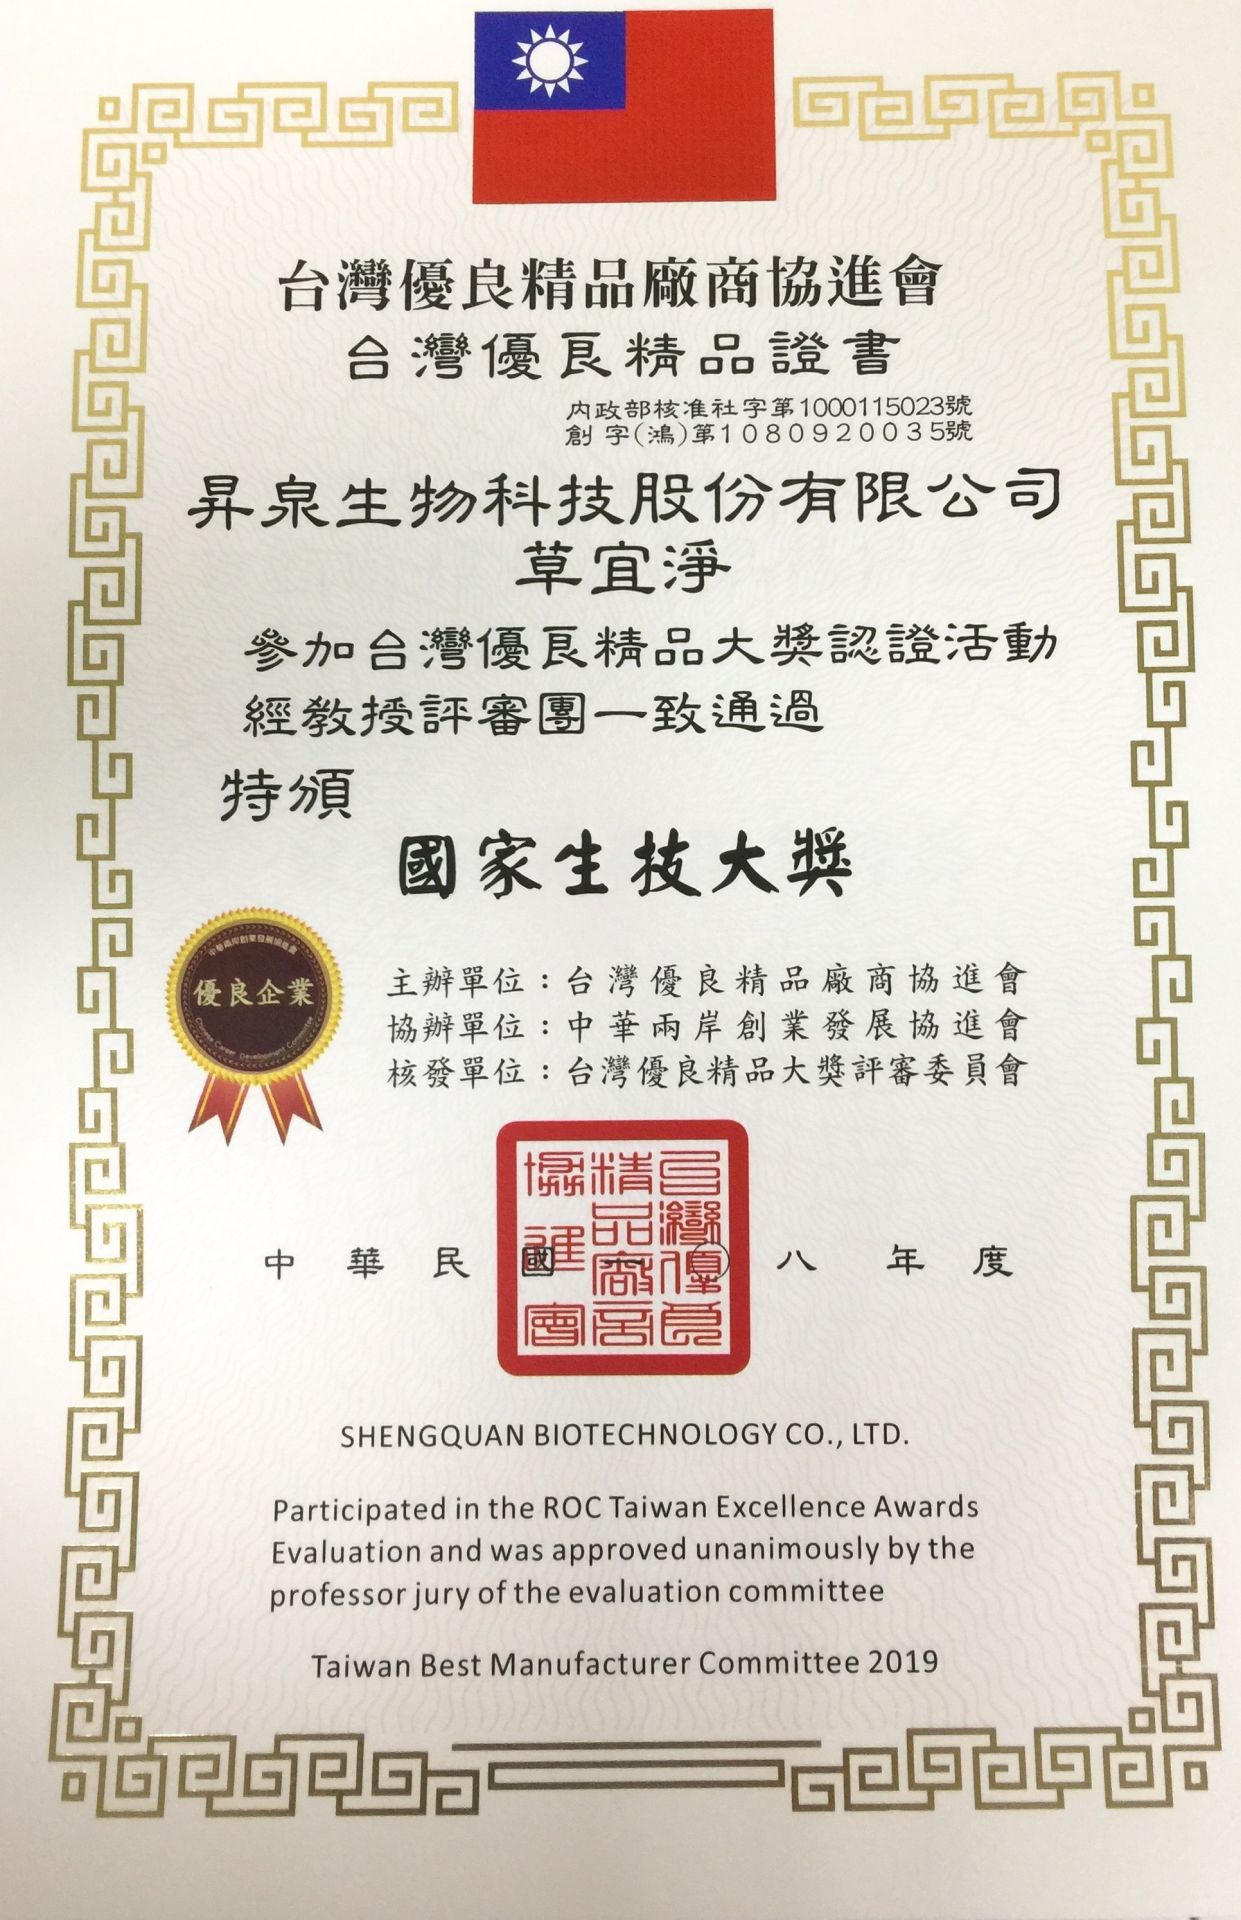 昇泉公司榮獲2019年台灣國家生技大獎殊榮